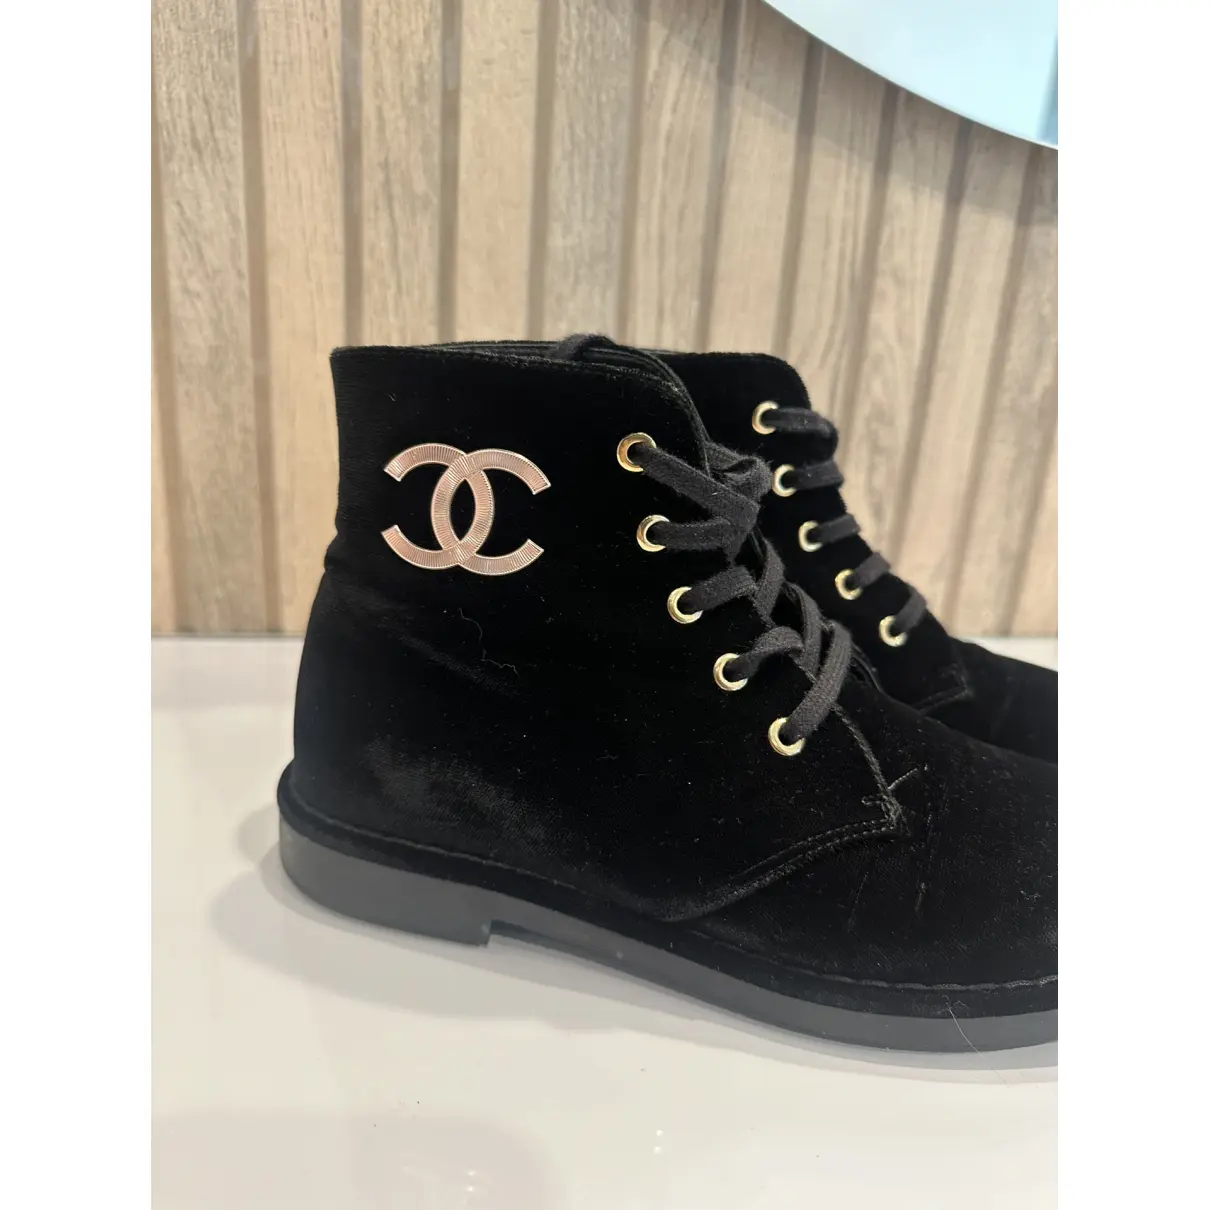 Buy Chanel Velvet boots online